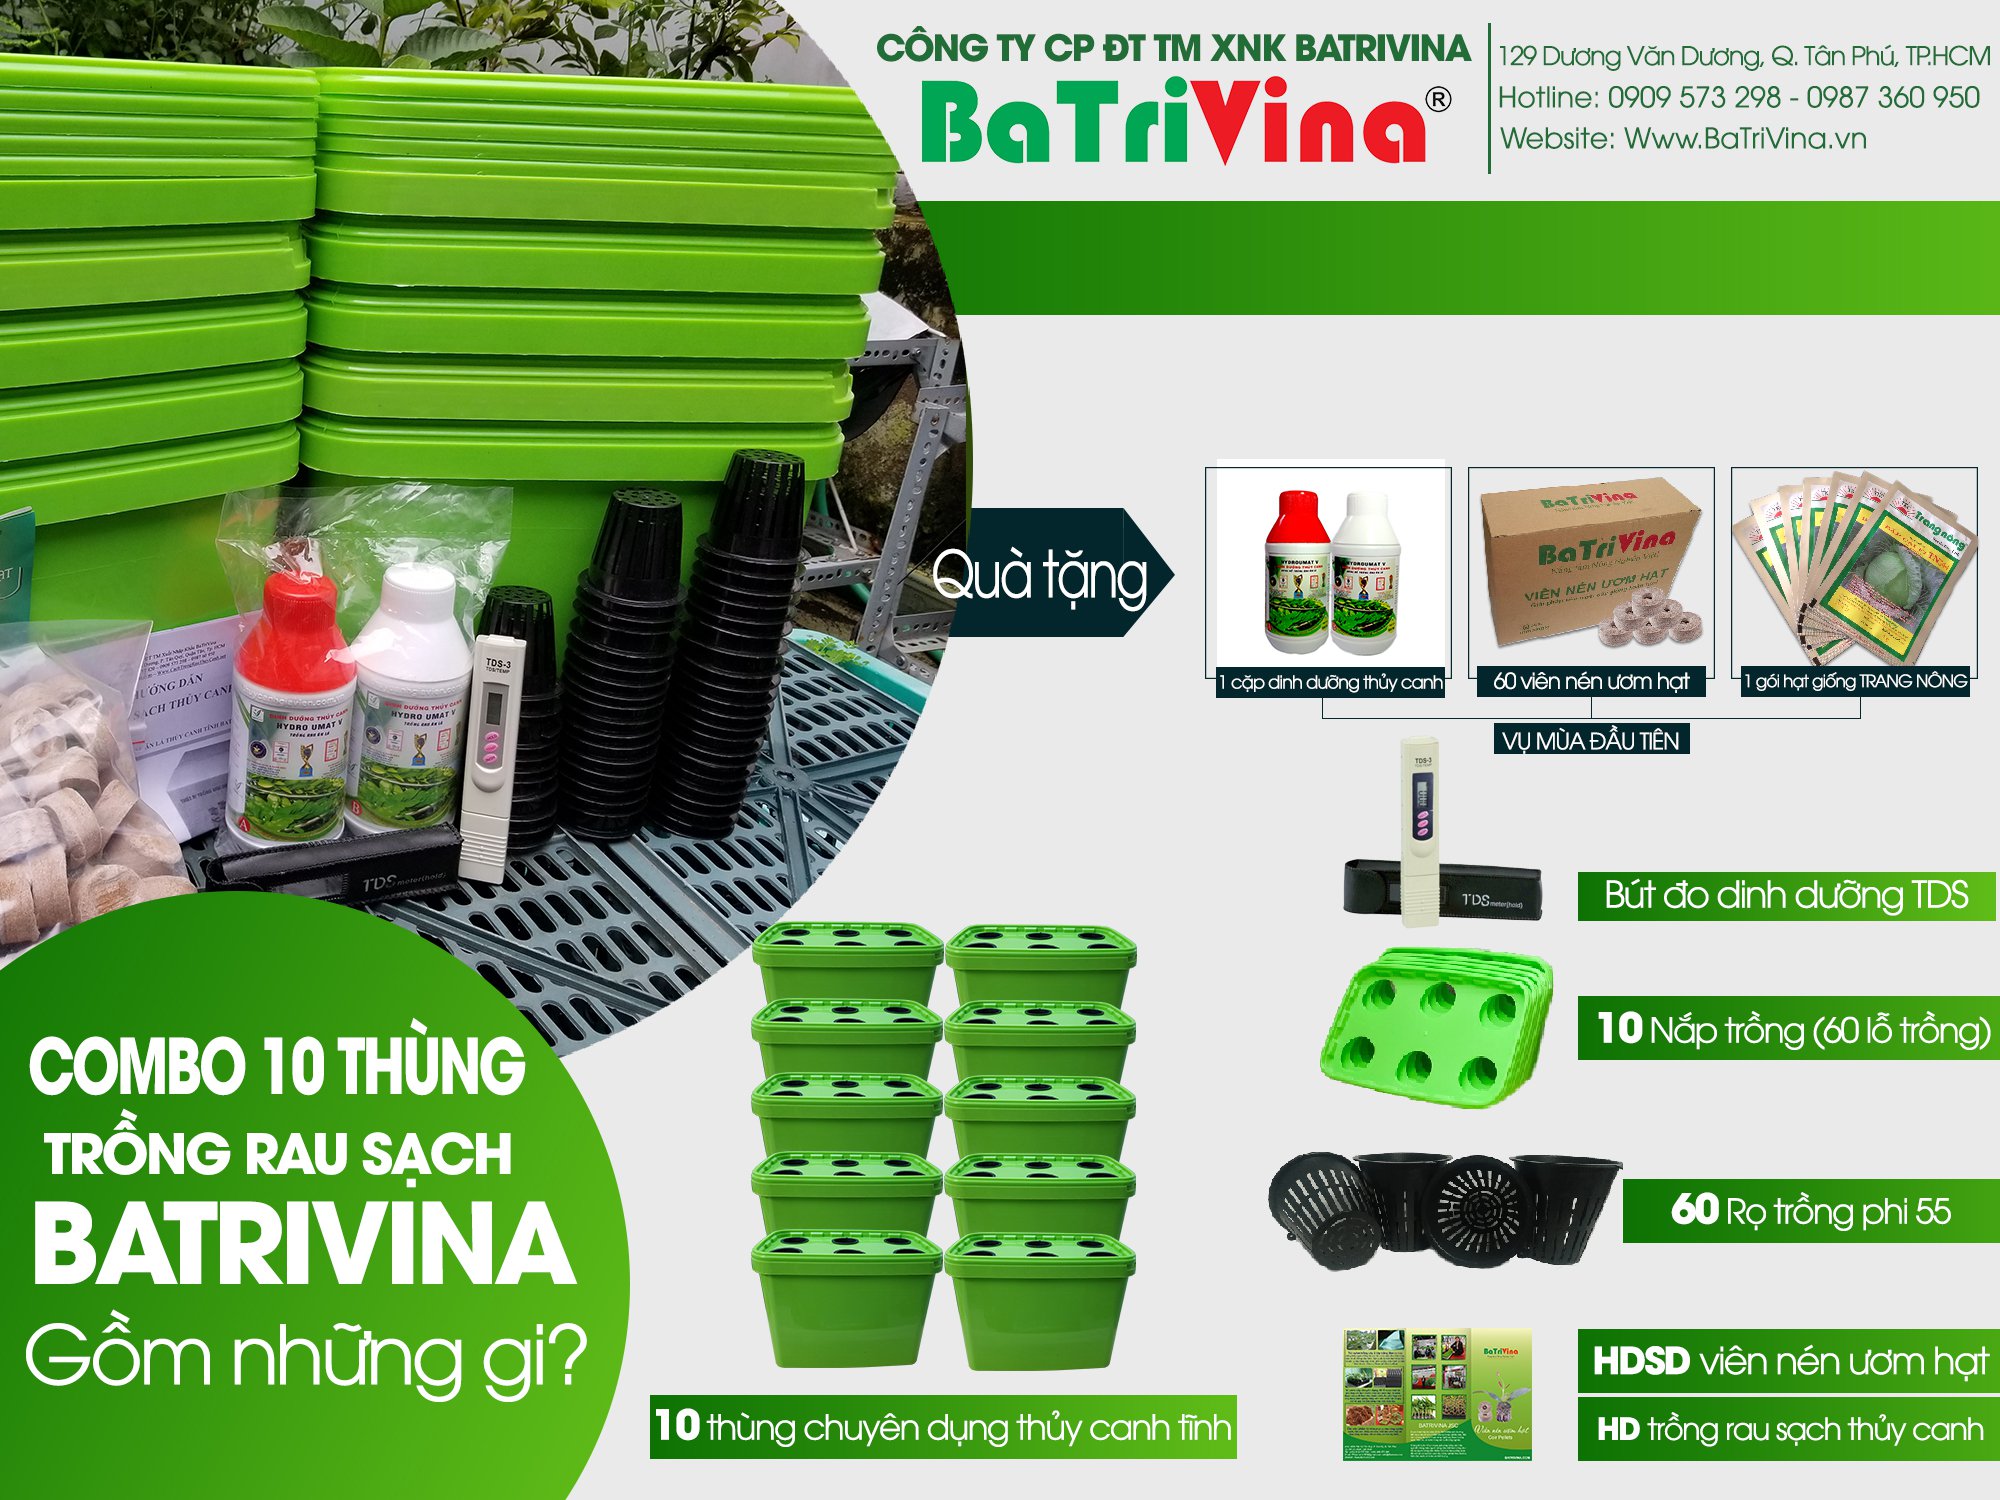 Combo 10 thùng trồng rau ăn lá thủy canh tĩnh BaTriVina (Đầy đủ phụ kiện trồng)